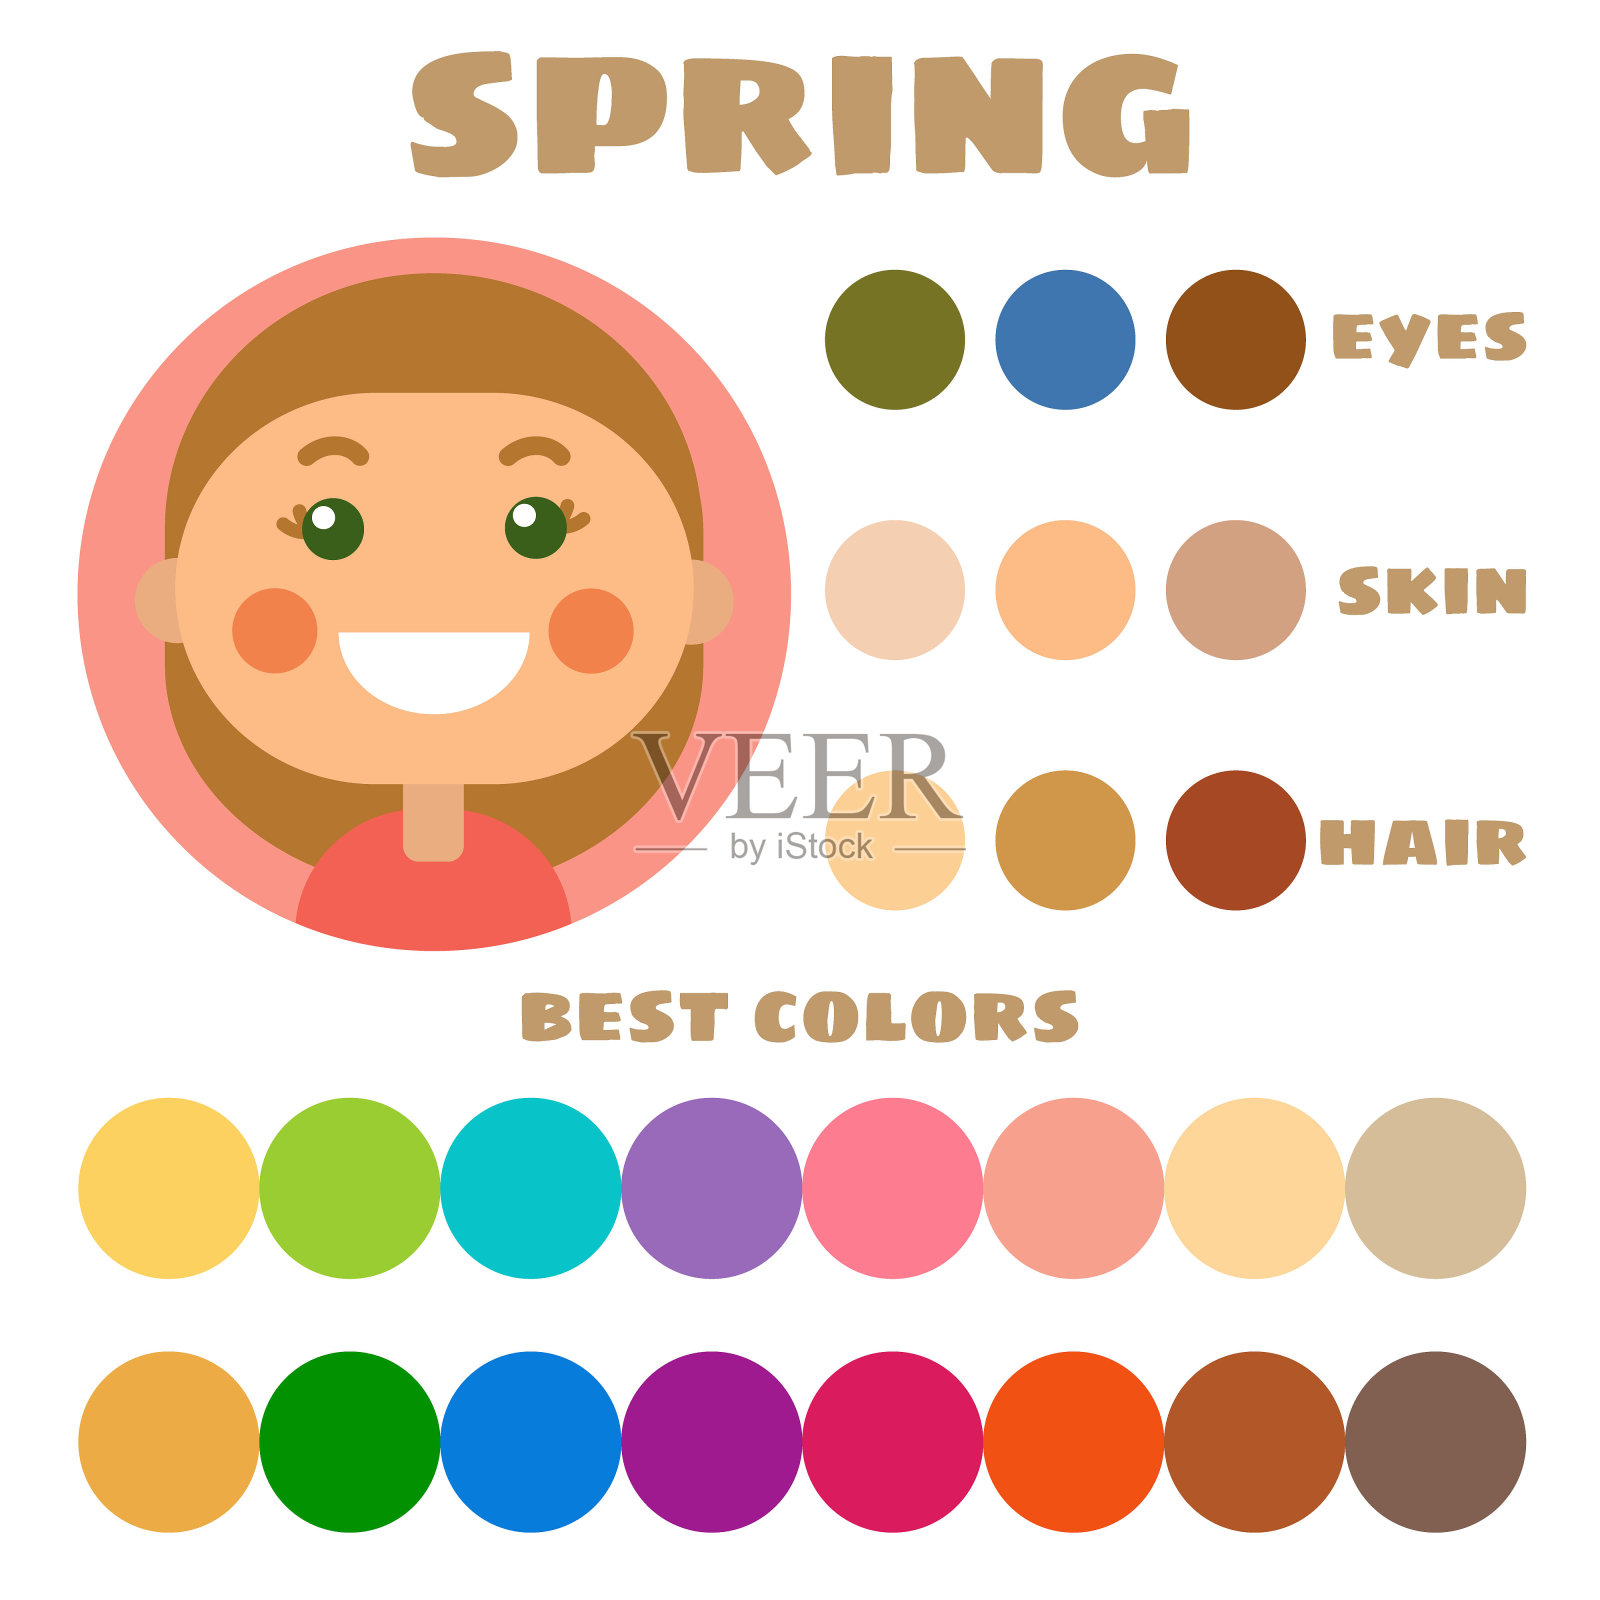 股票矢量颜色指南。眼睛，皮肤，发色。季节性色彩分析调色板用最佳色彩适合春季型儿童外观插画图片素材